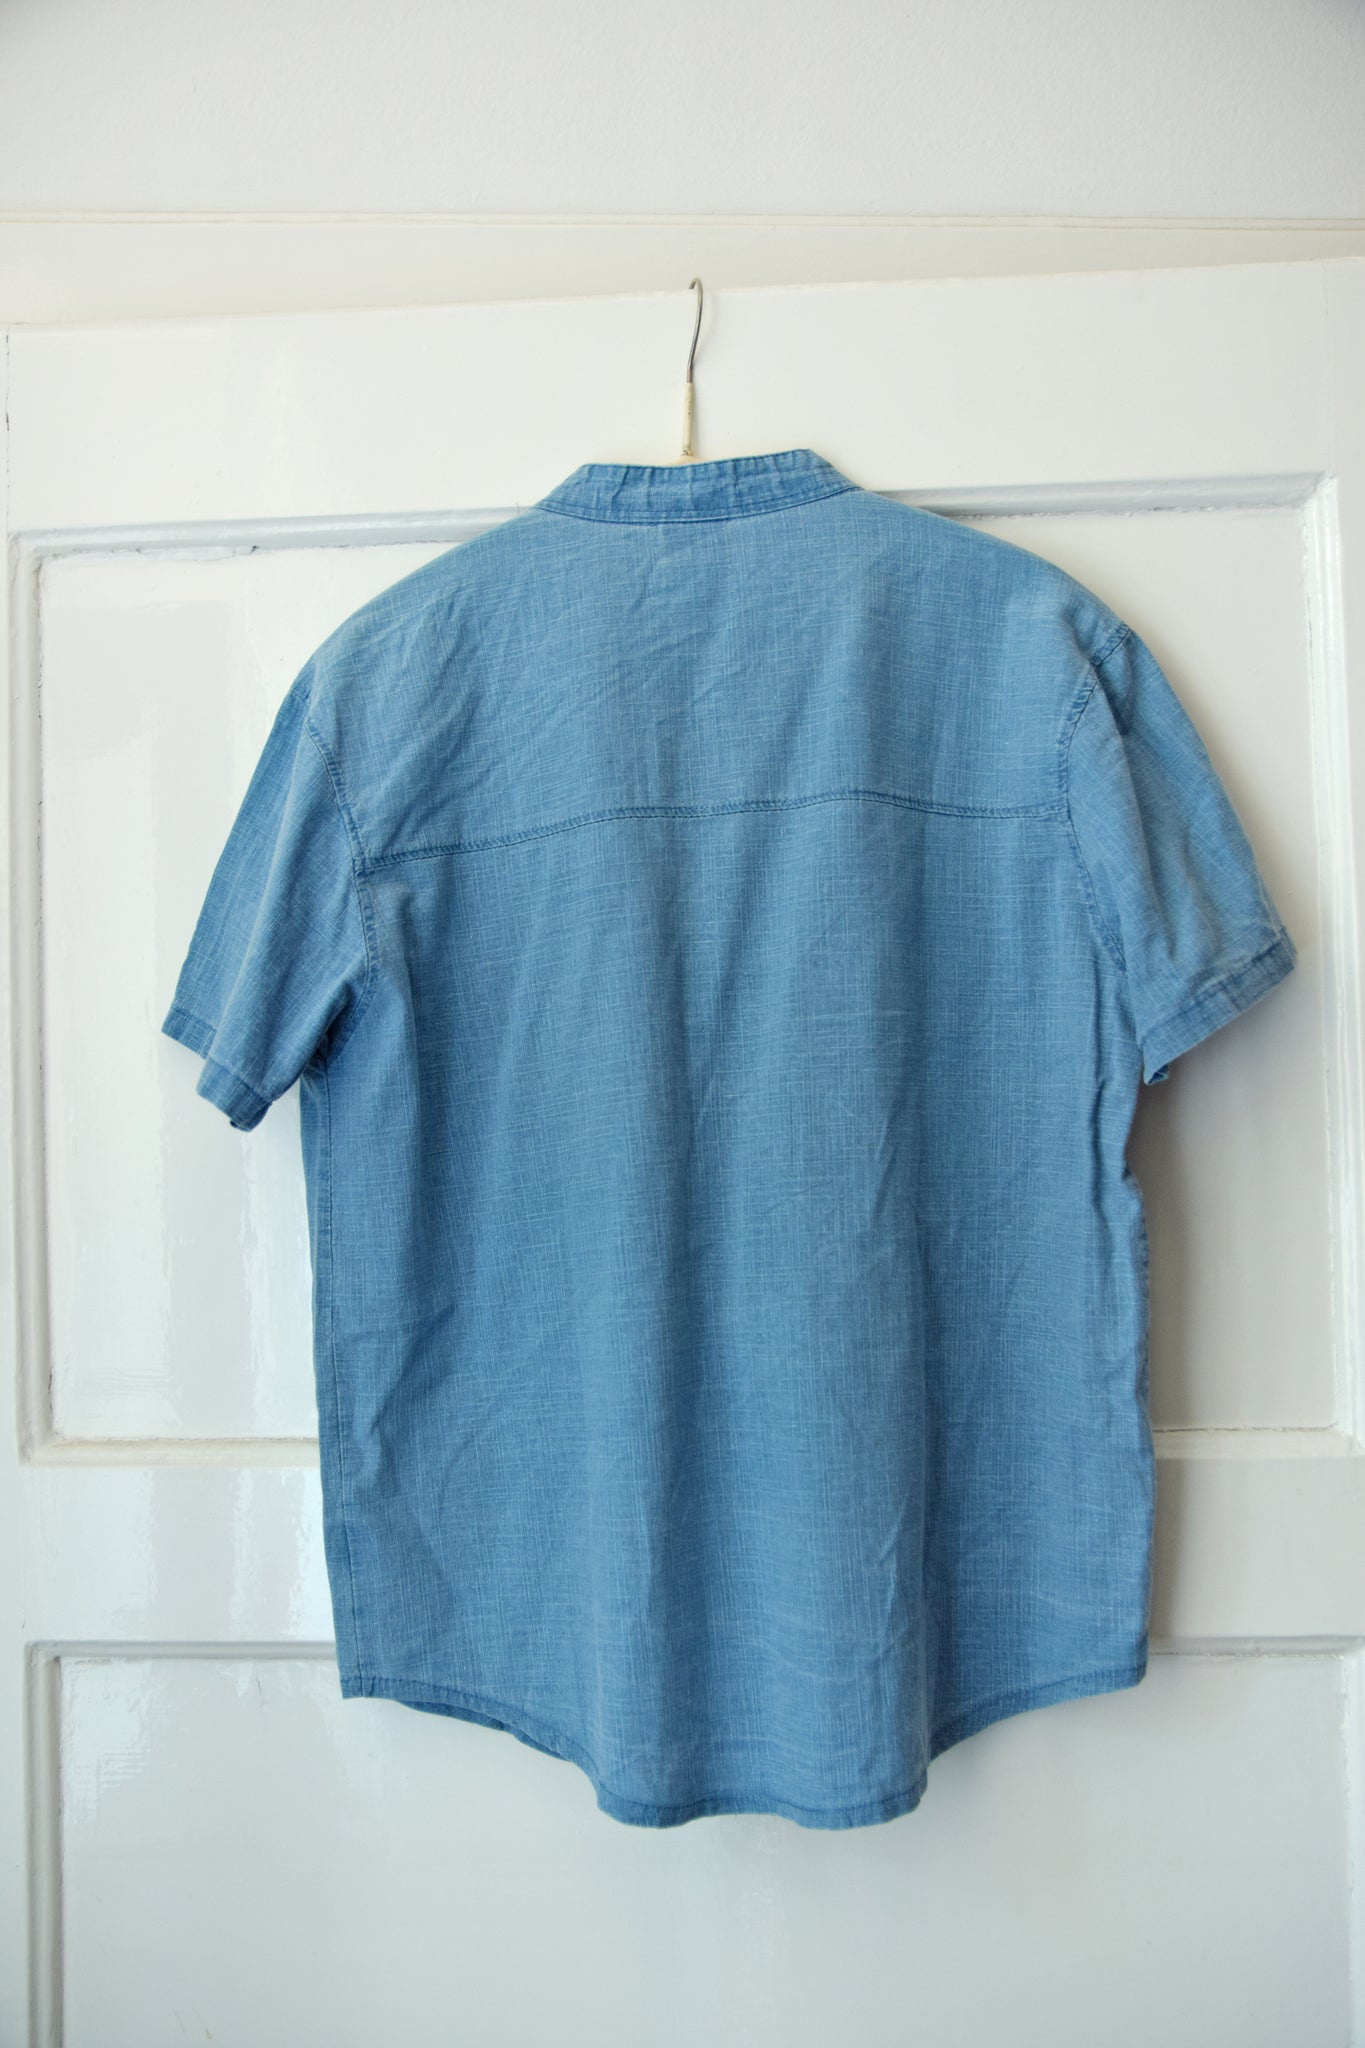 Vintage Size M Jeans Short Sleeved Shirt 90s Shirt Cotton Shirt Summer Men's Shirt